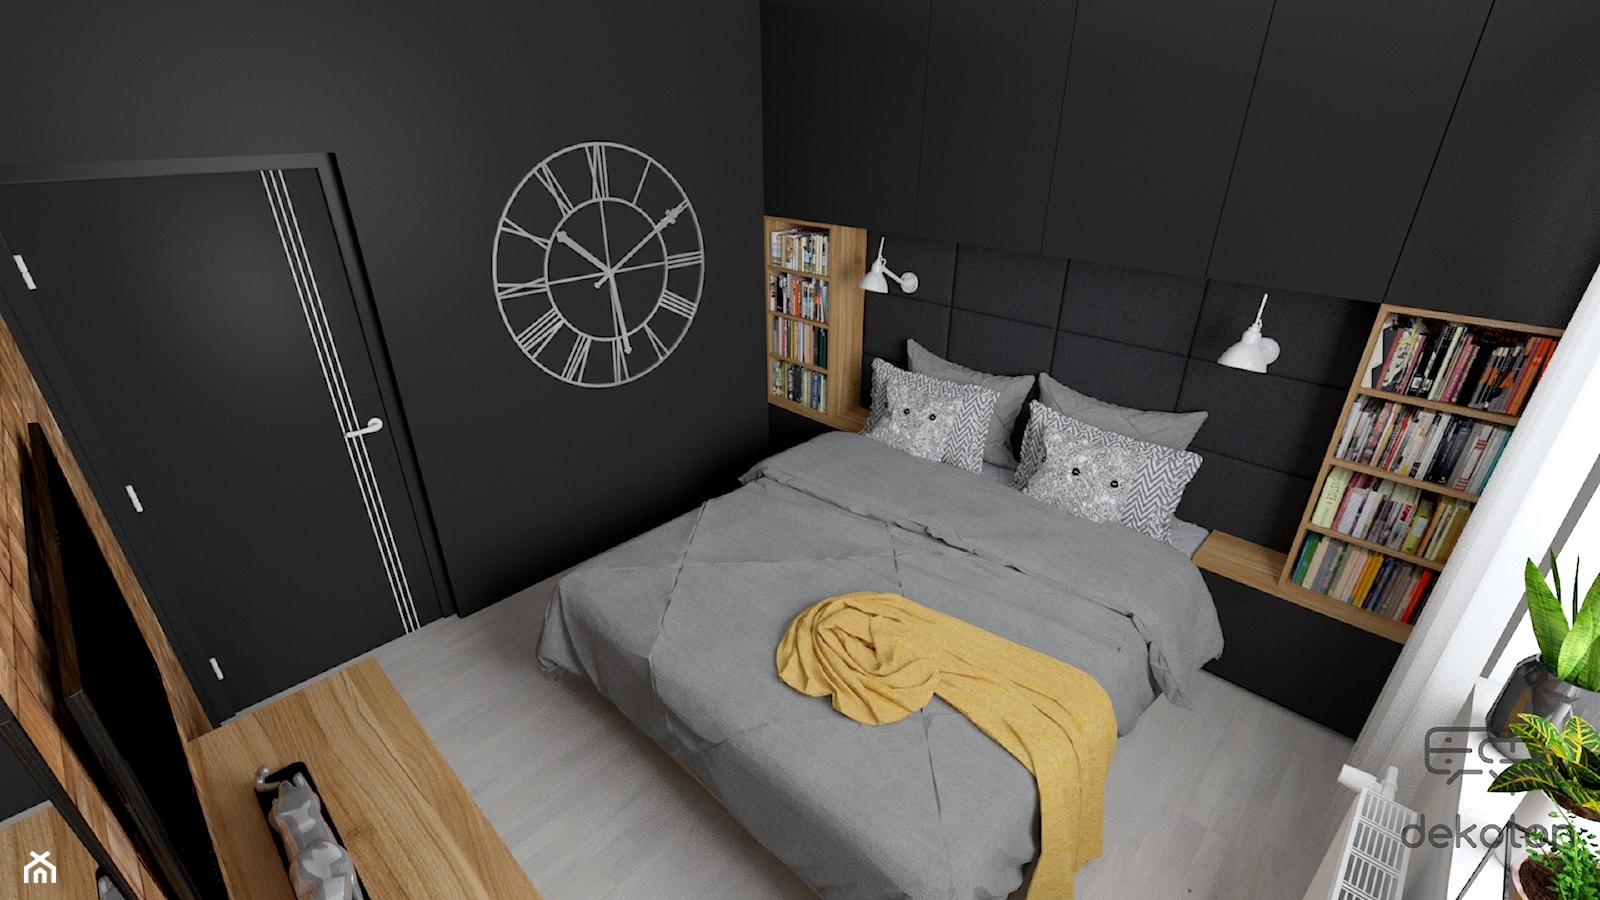 Sypialnia nowoczesna czarna z drewnem - zdjęcie od dekoton - Homebook